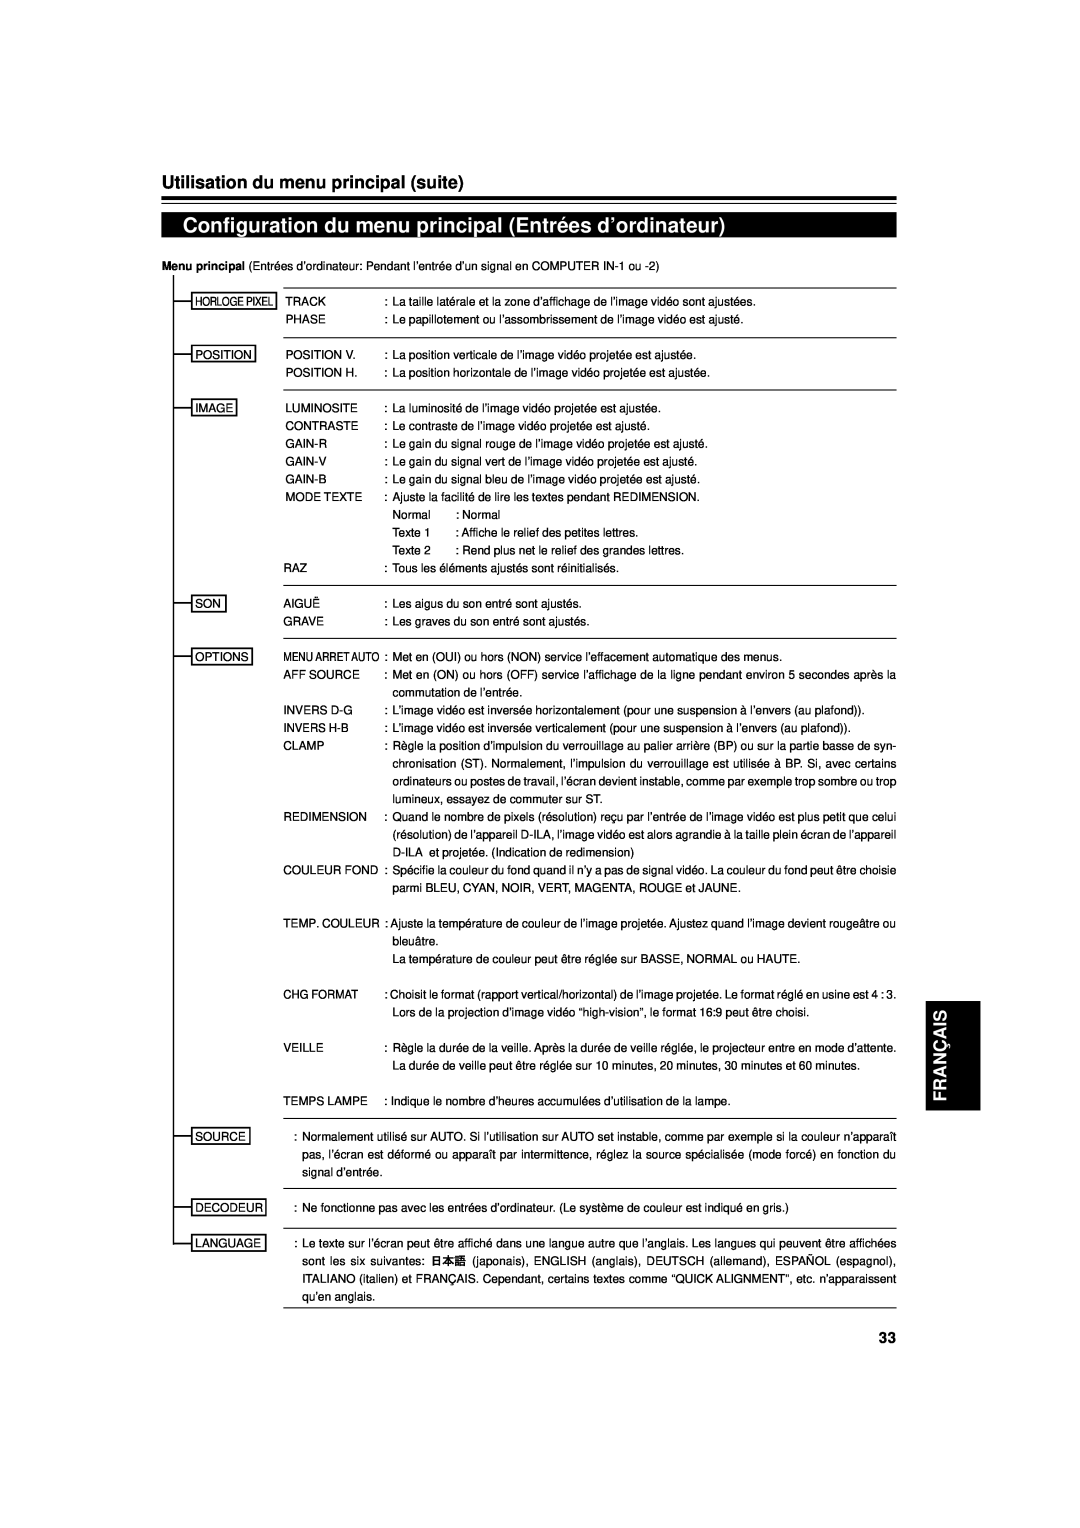 JVC DLA-G11U manual Configuration du menu principal Entrées d’ordinateur, Utilisation du menu principal suite, Français 